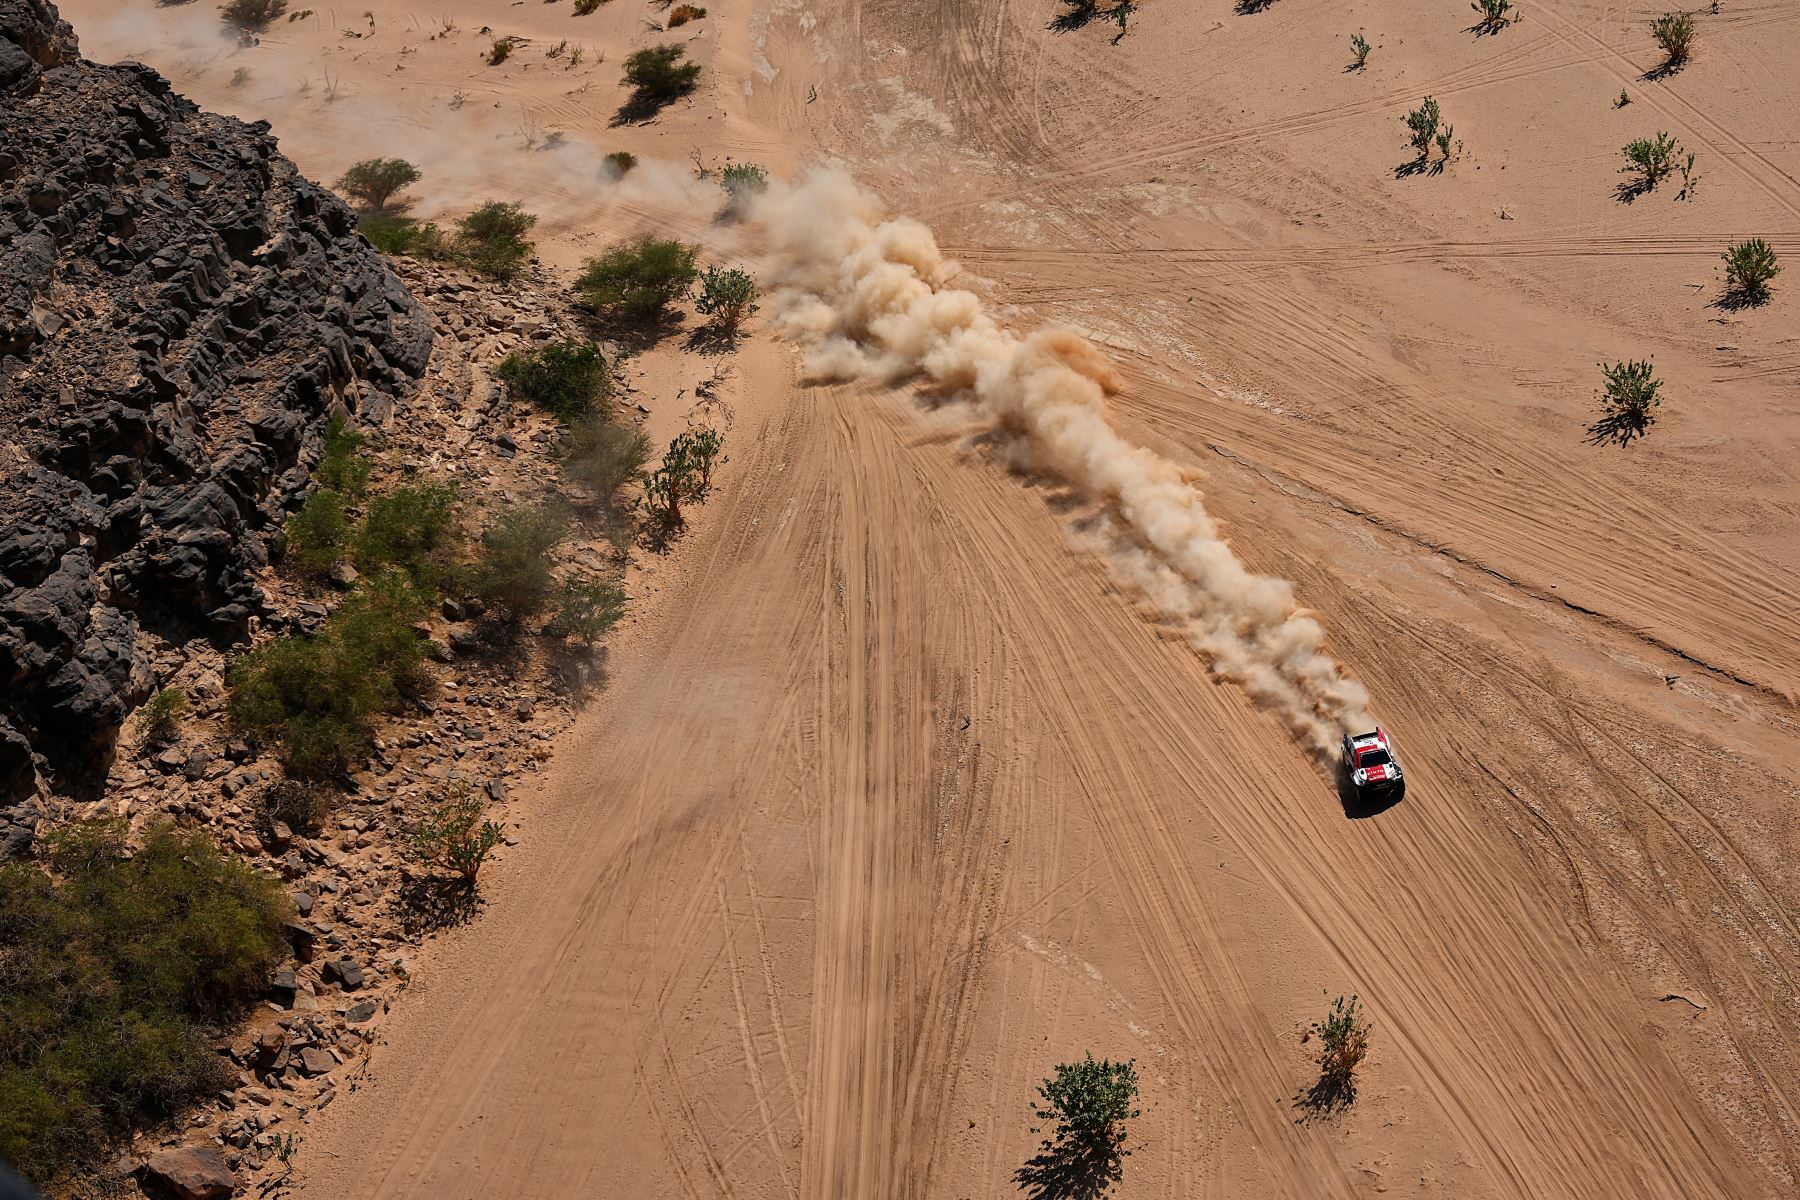 El piloto sudafricano de Toyota Henk Lategan y el copiloto Brett Cummings de Sudáfrica compiten durante la Etapa 10 del Rally Dakar 2022 entre Wadi Ad Dawasir y Bisha en Arabia Saudita.
Foto: AFP